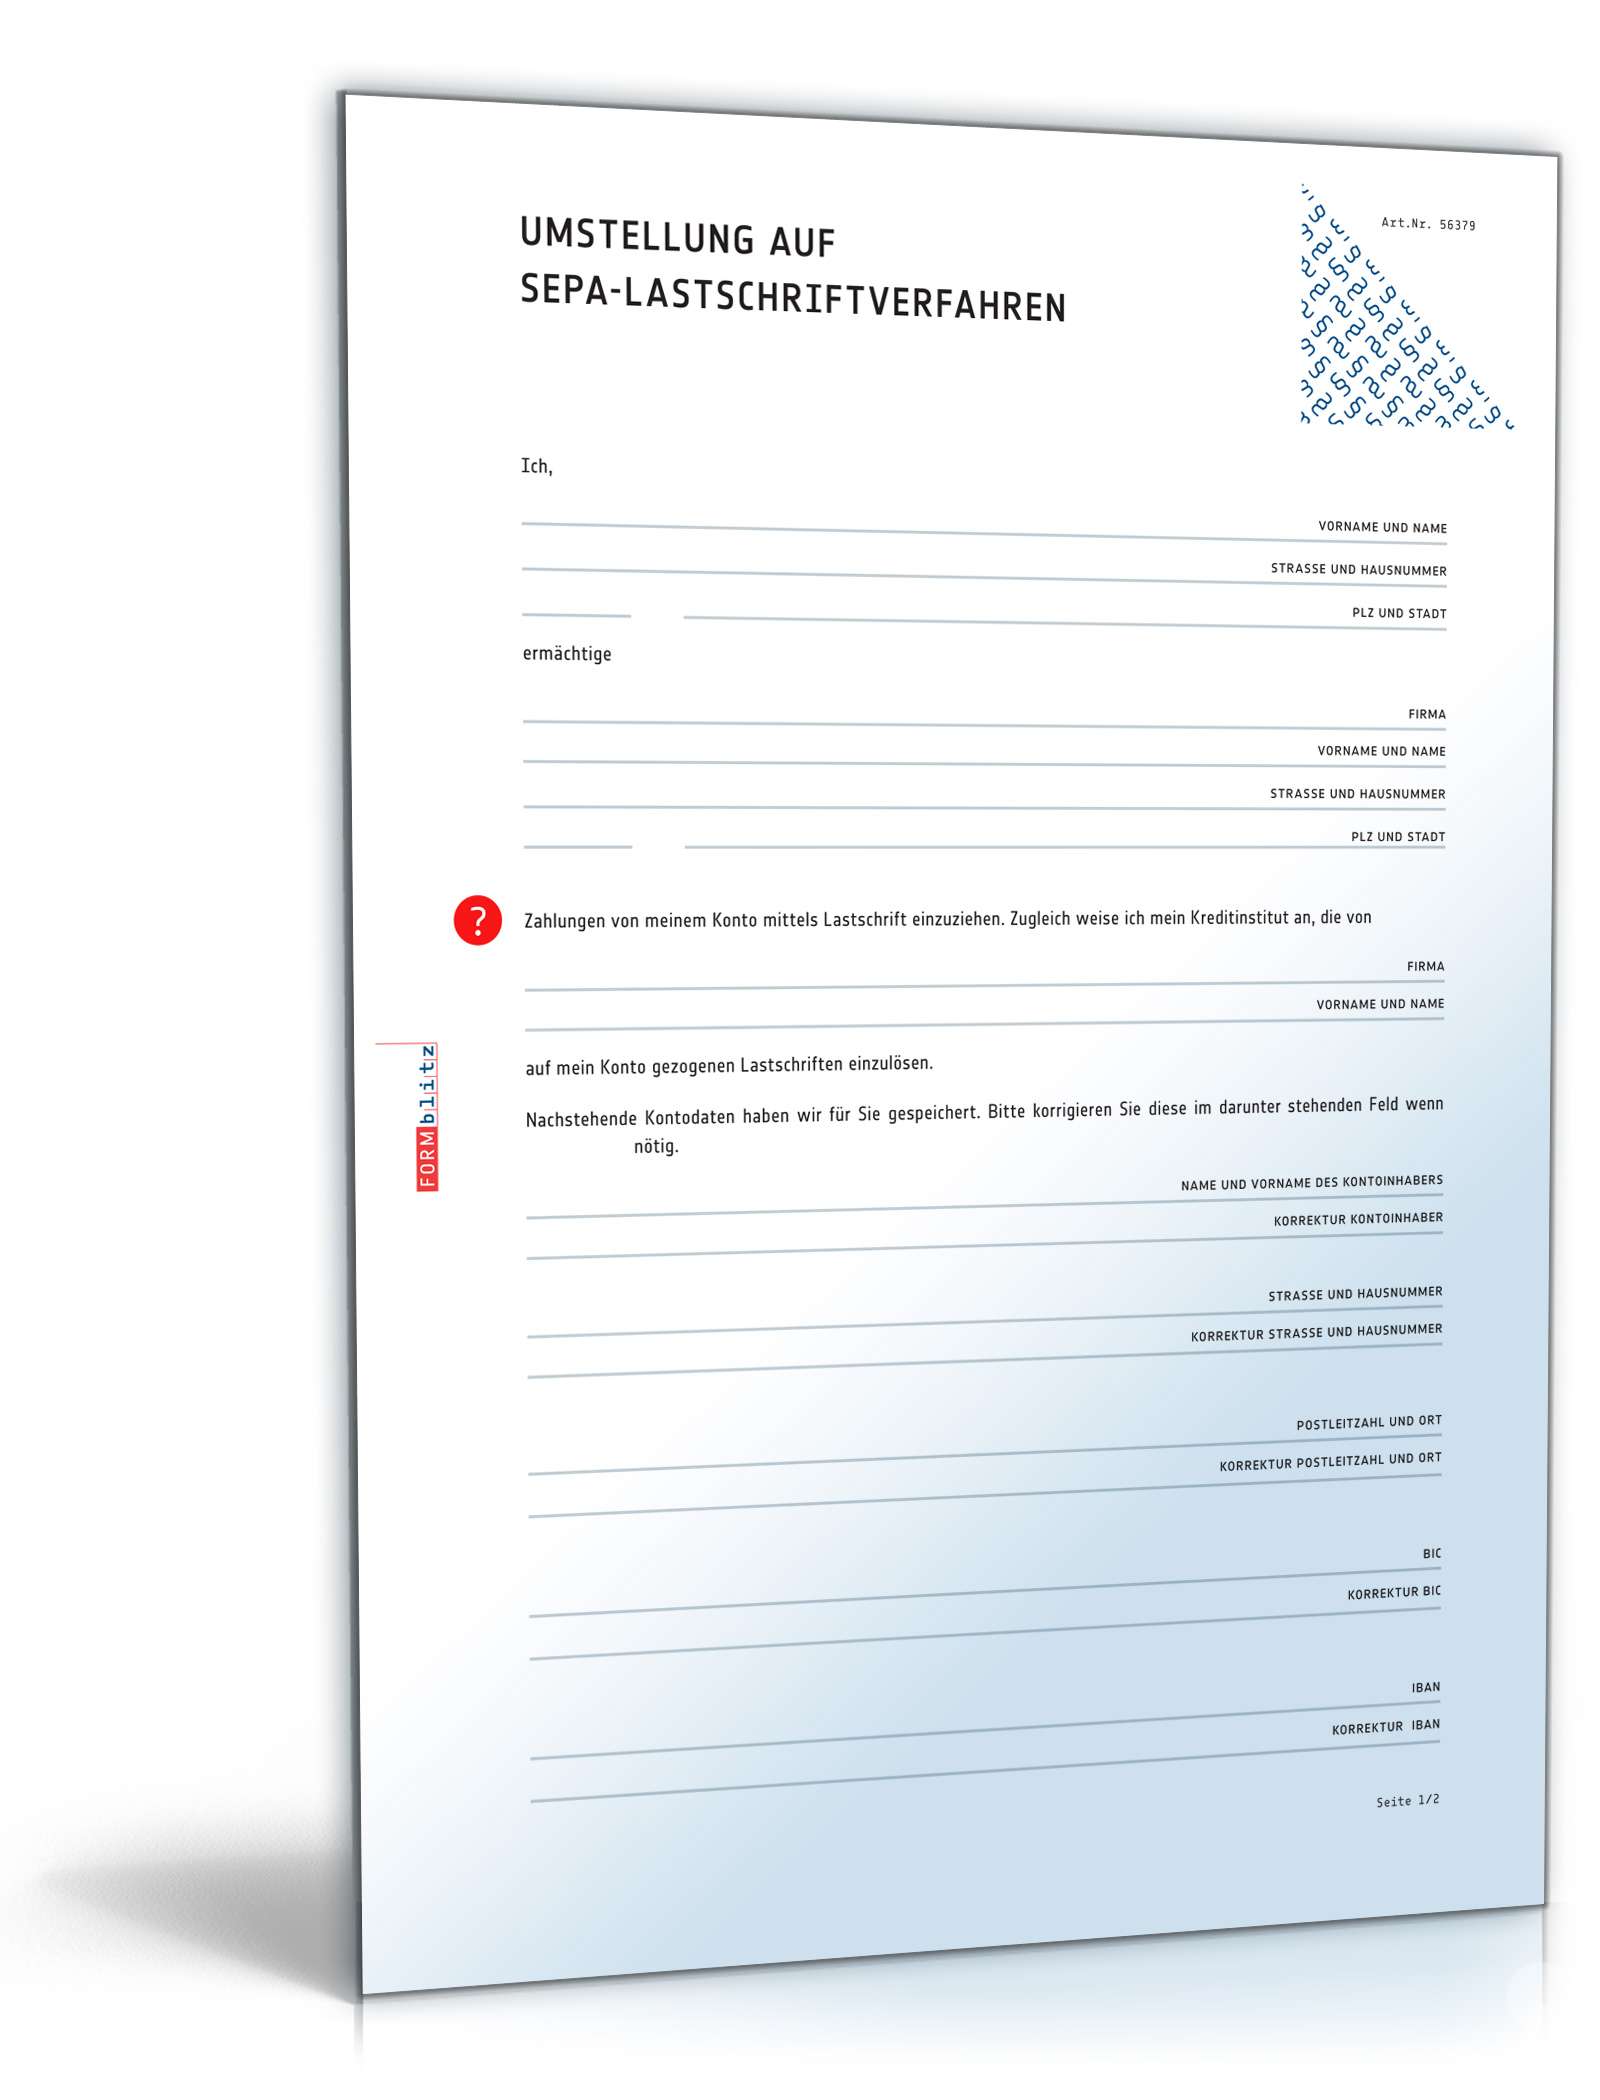 Hauptbild des Produkts: Umstellung auf SEPA-Lastschriftverfahren